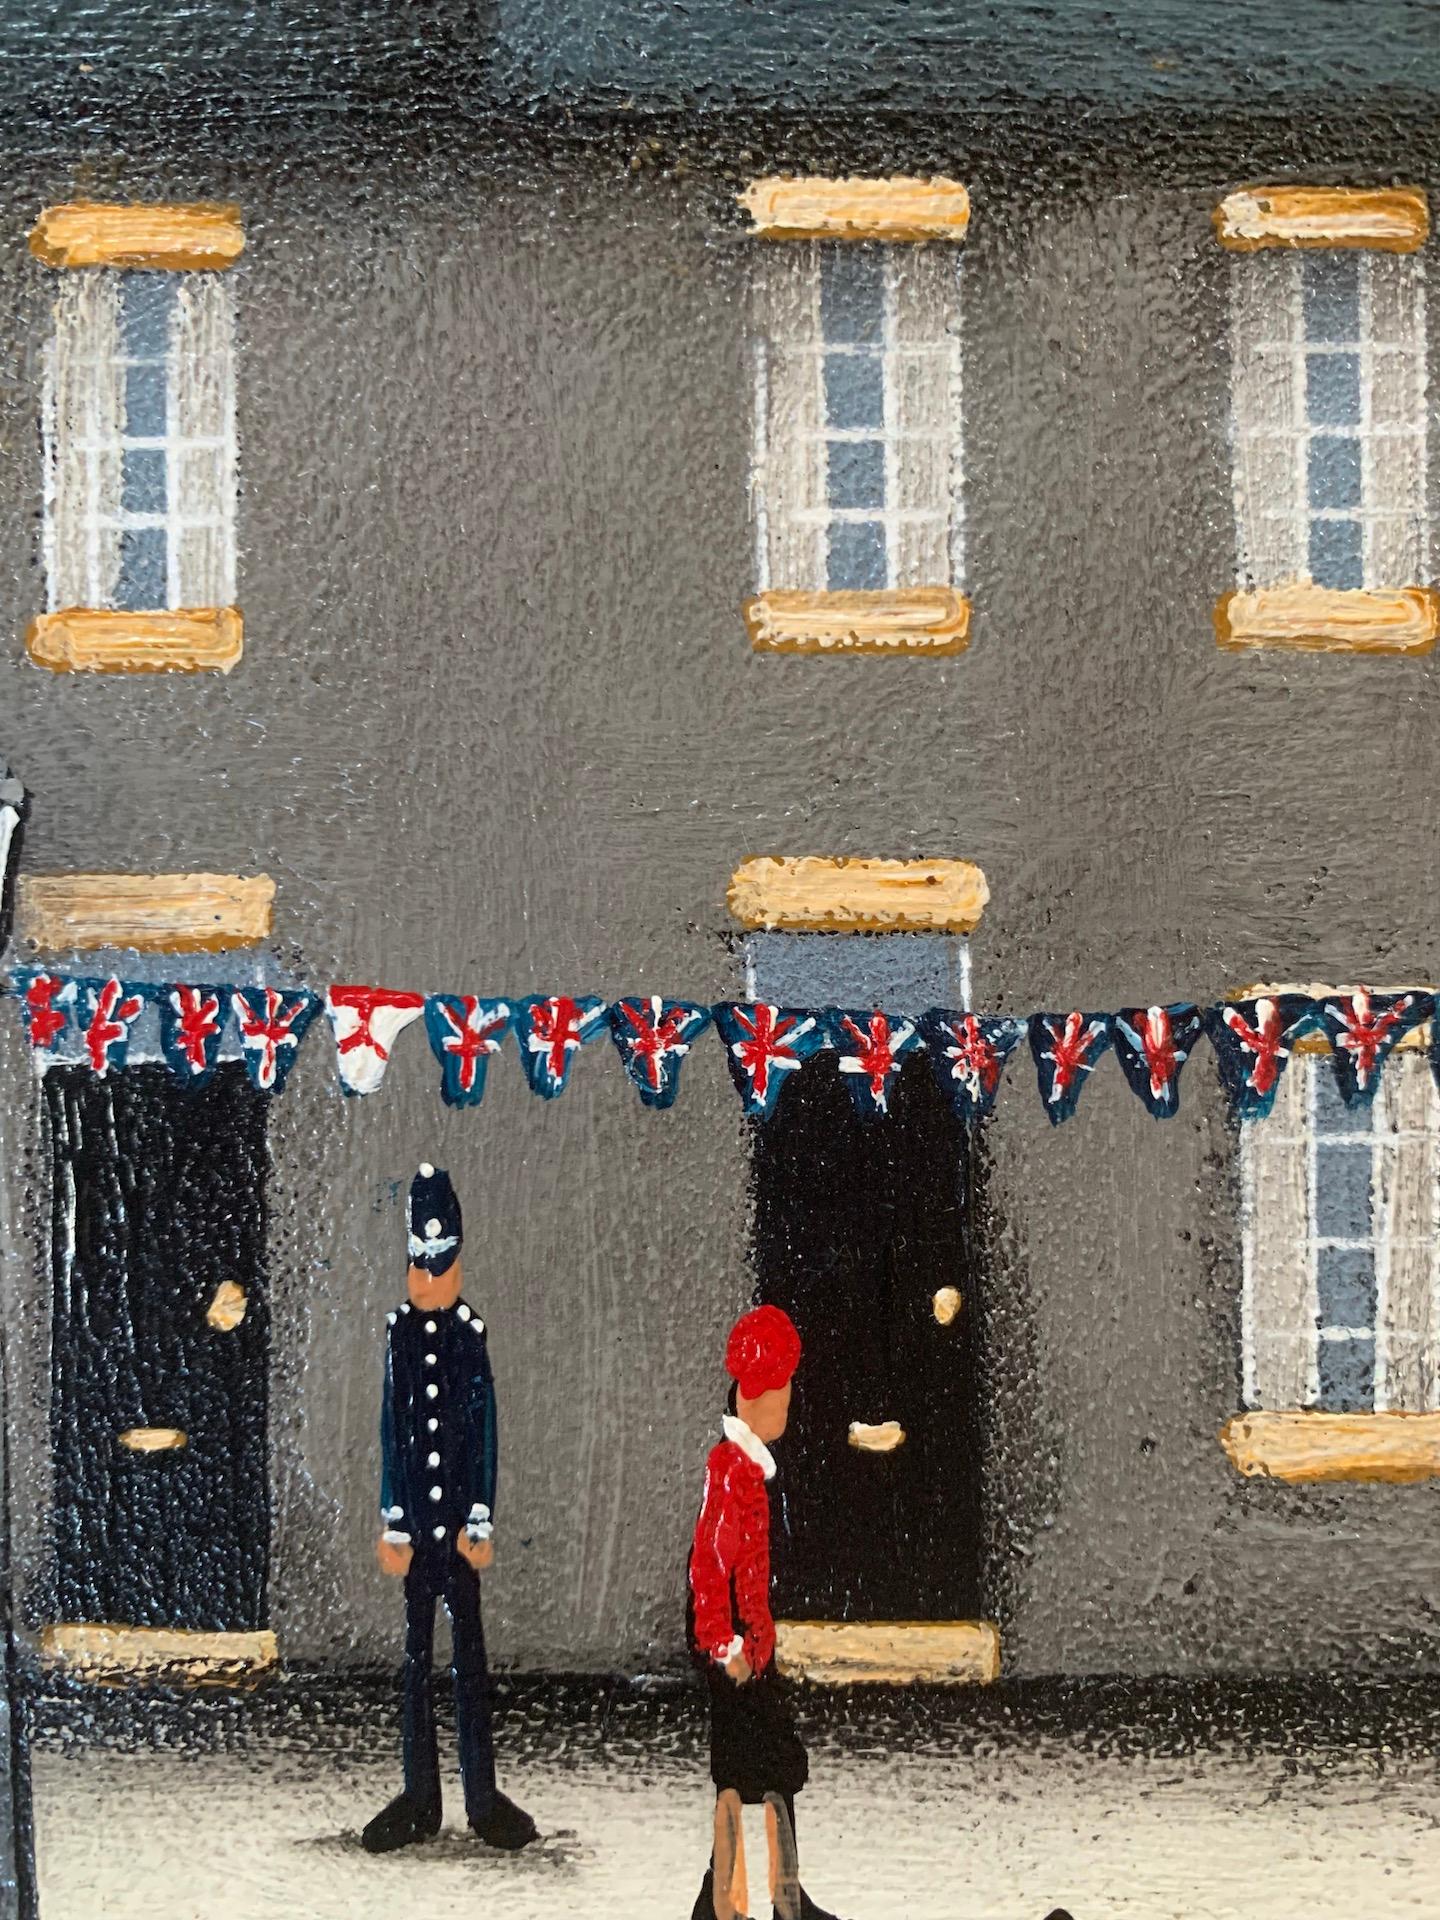 Peinture de style Lowry VI « Market Day and Bustling Street » (marché et rue animée), paysage urbain industriel - Gris Landscape Painting par Sean Durkin